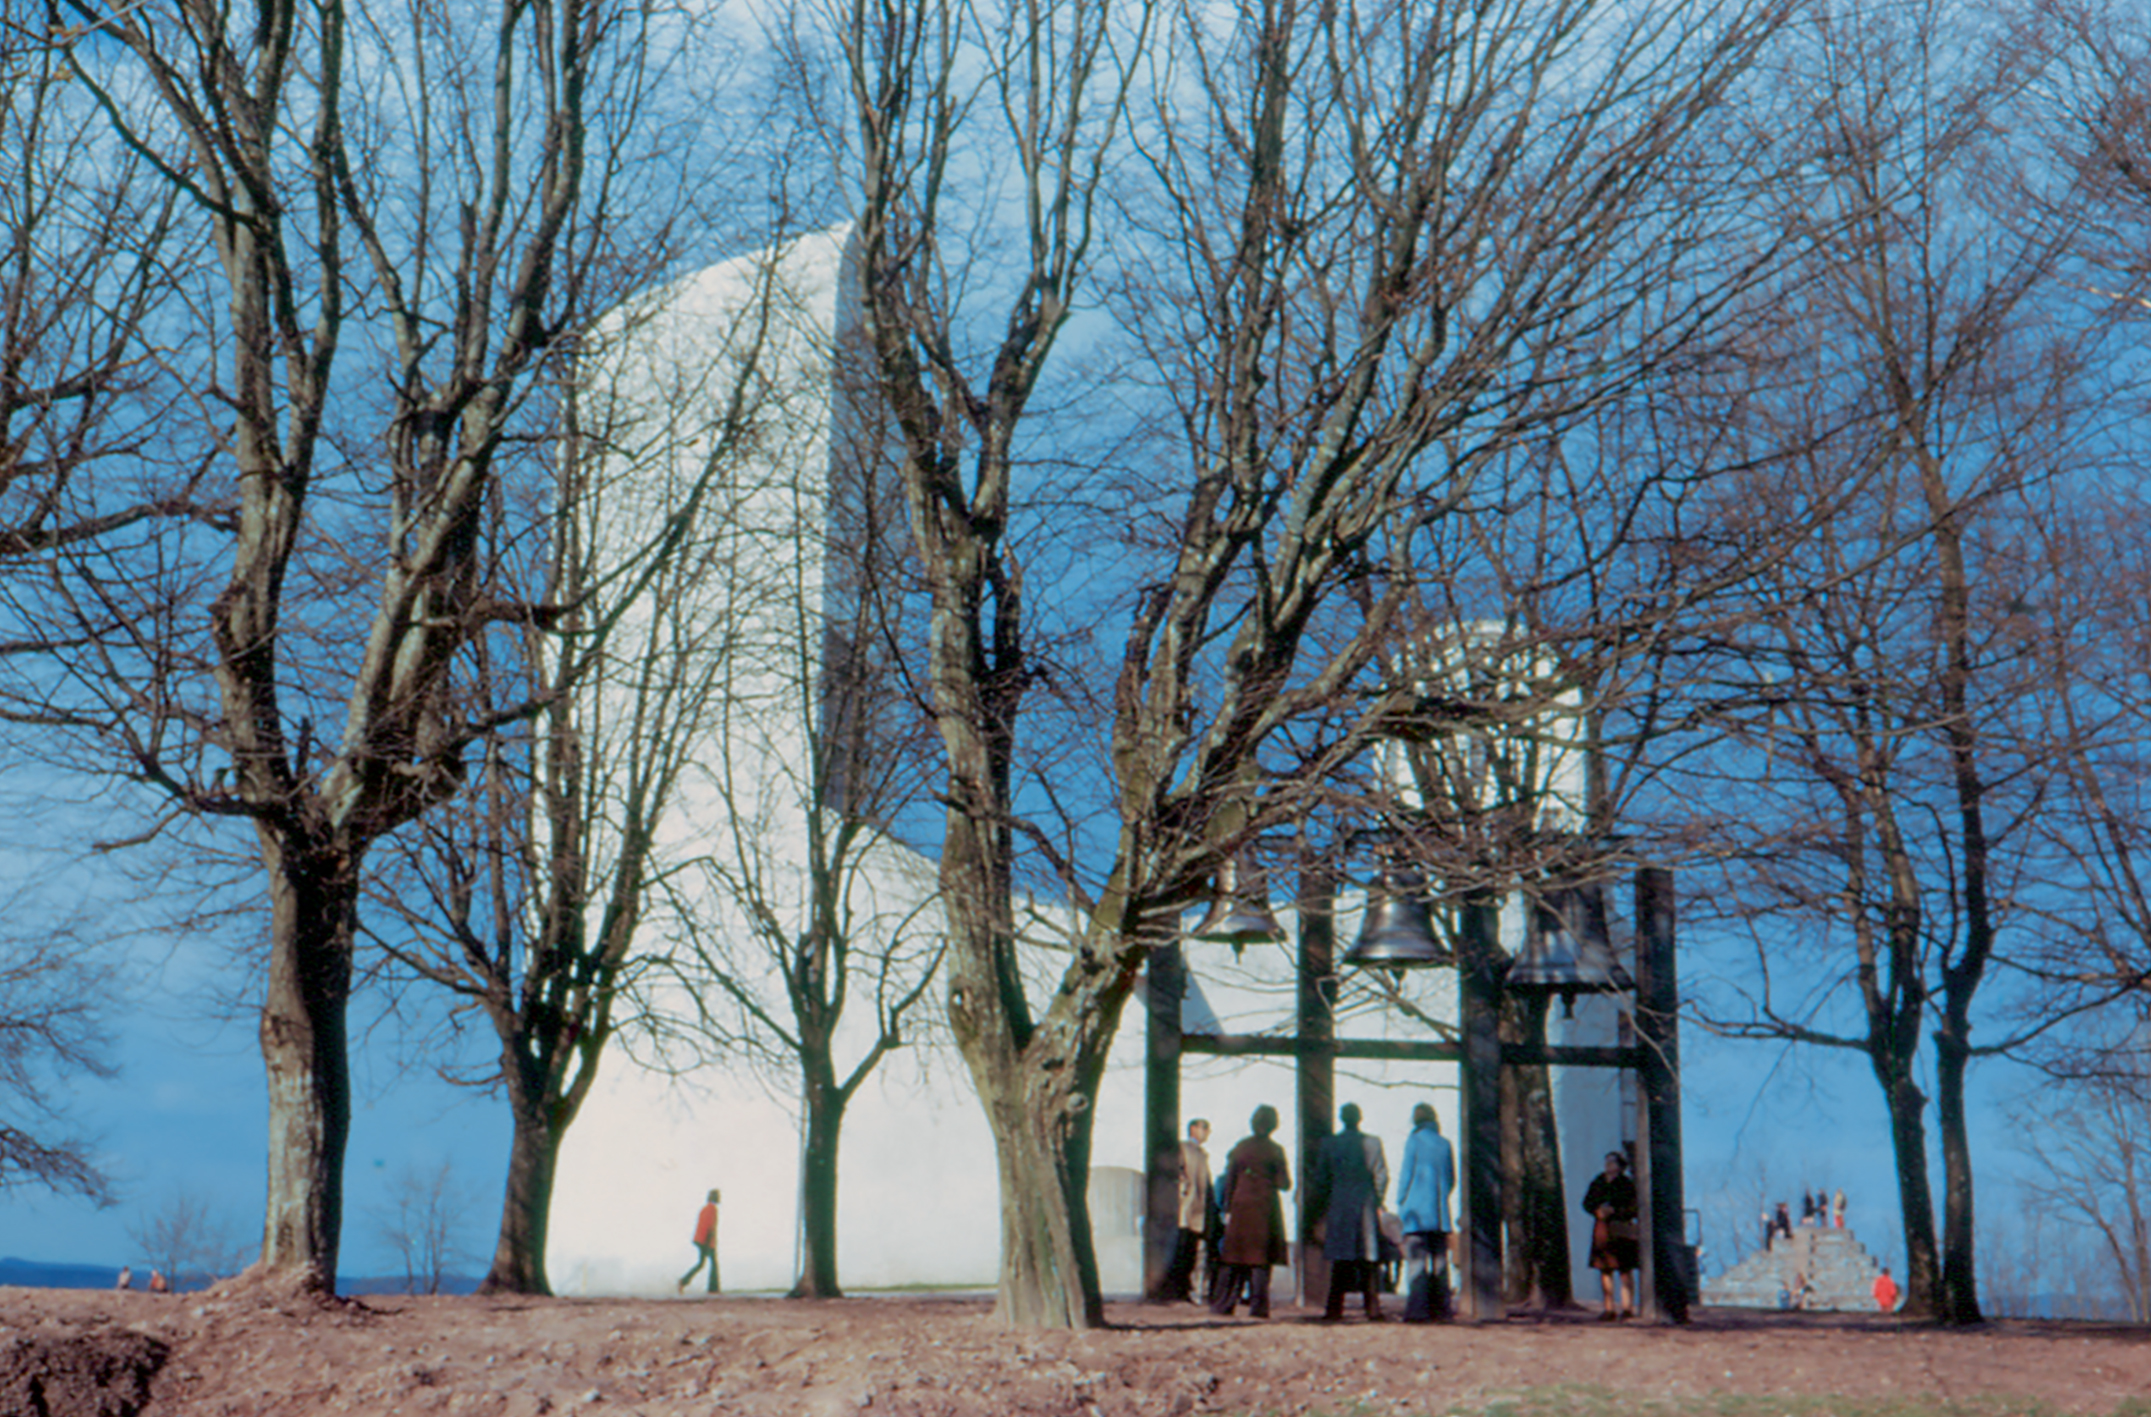 Campanile, église Notre-Dame-du-Haut de Ronchamp, sur une idée de Le Corbusier.